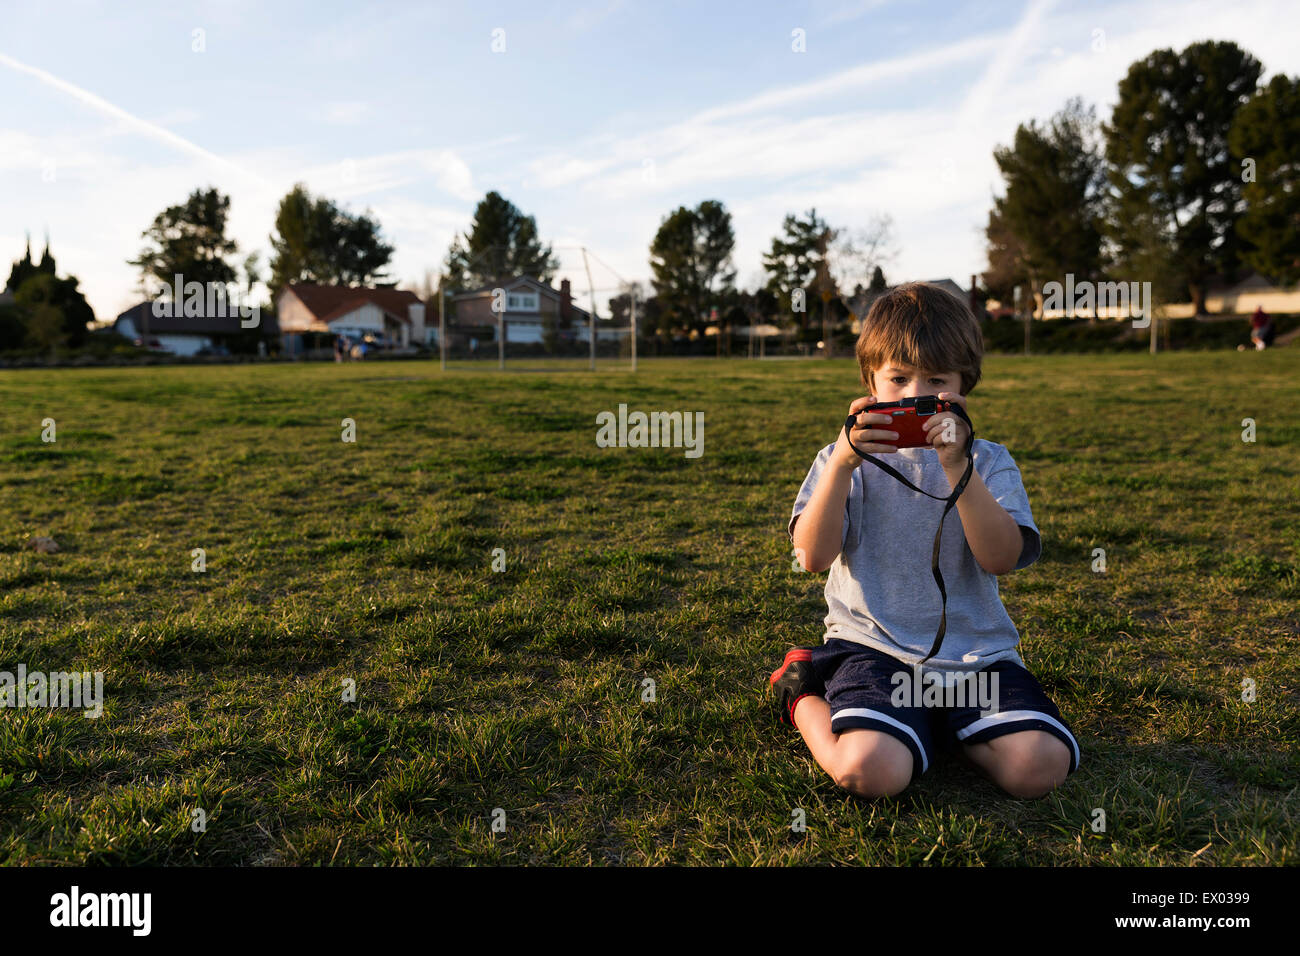 Junge kniend im Park Blick auf Digitalkamera Stockfoto